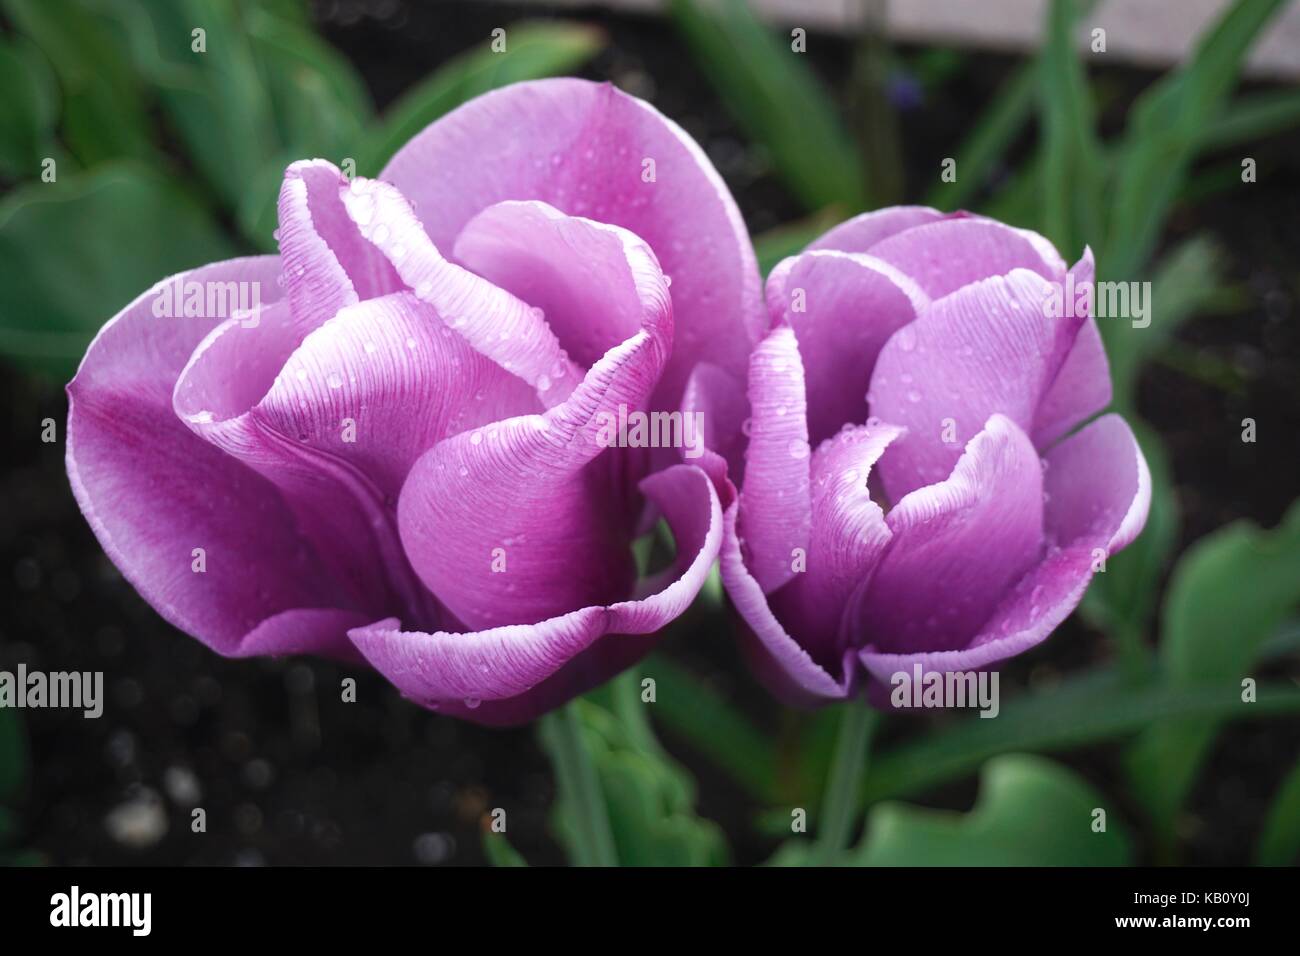 Close up of purple tulips avec gouttes de pluie Banque D'Images